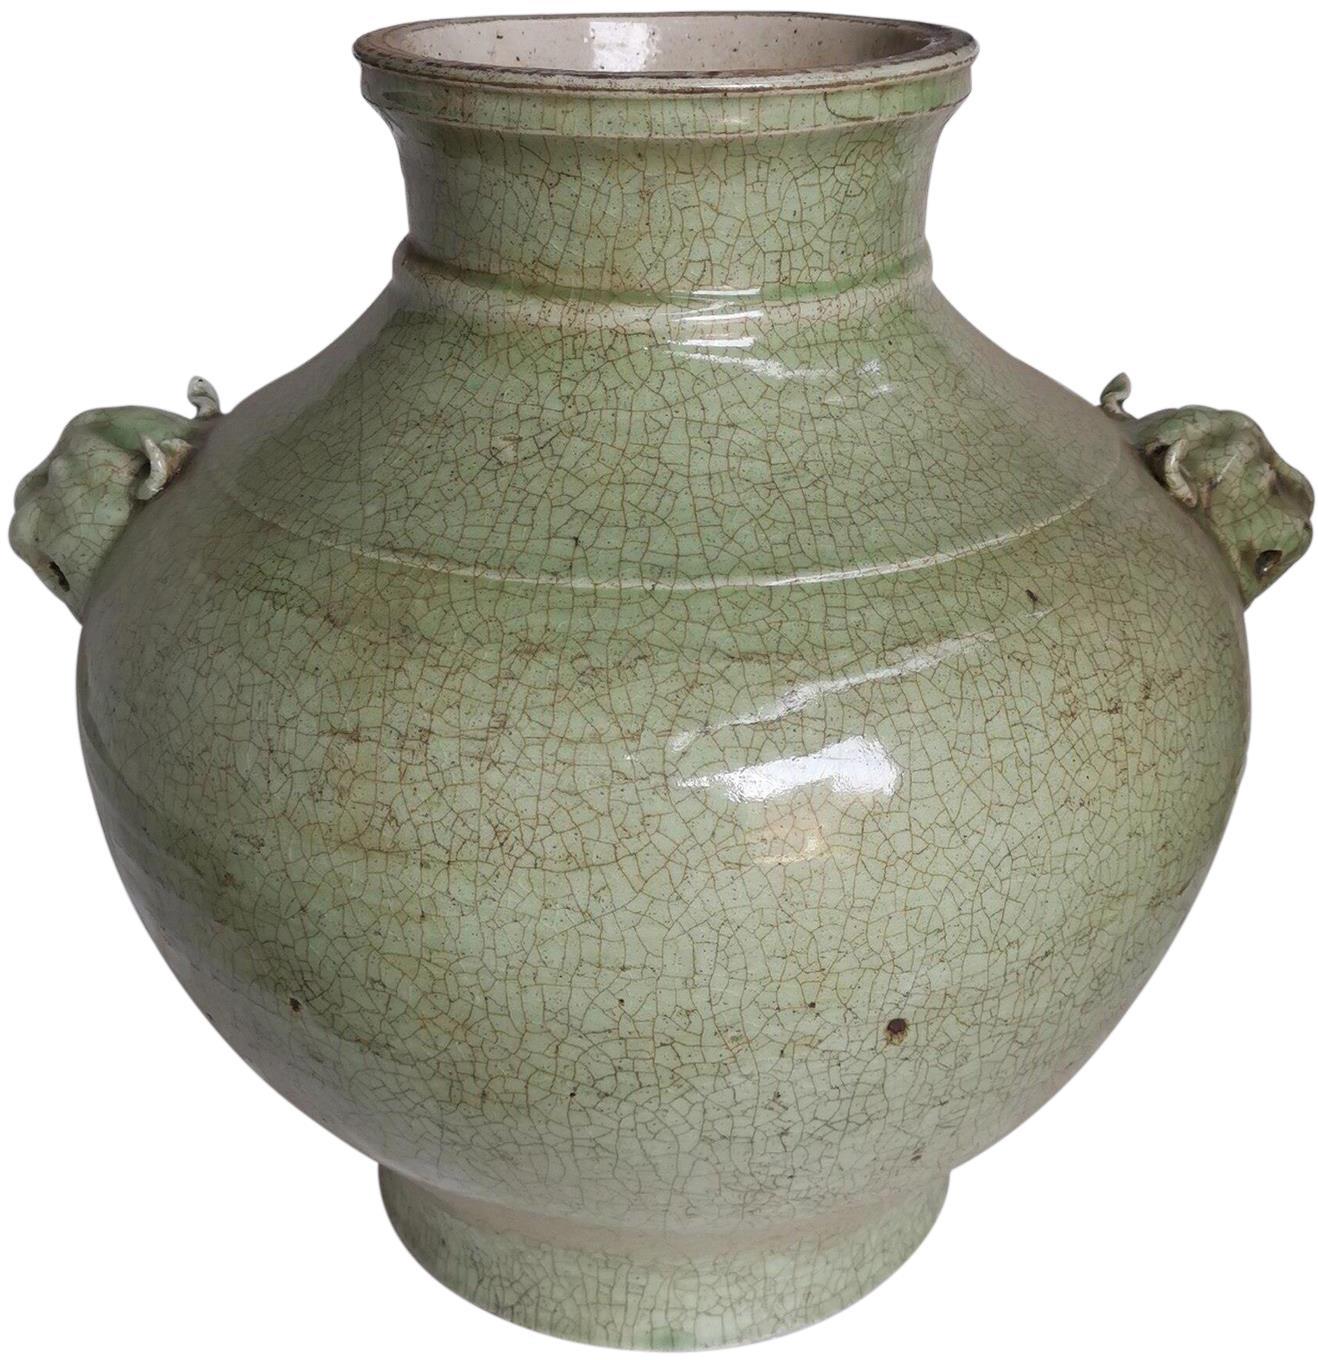 Jar Vase Double Lion Head Handle Celadon Crackled Green Ceramic Handmade-Image 1